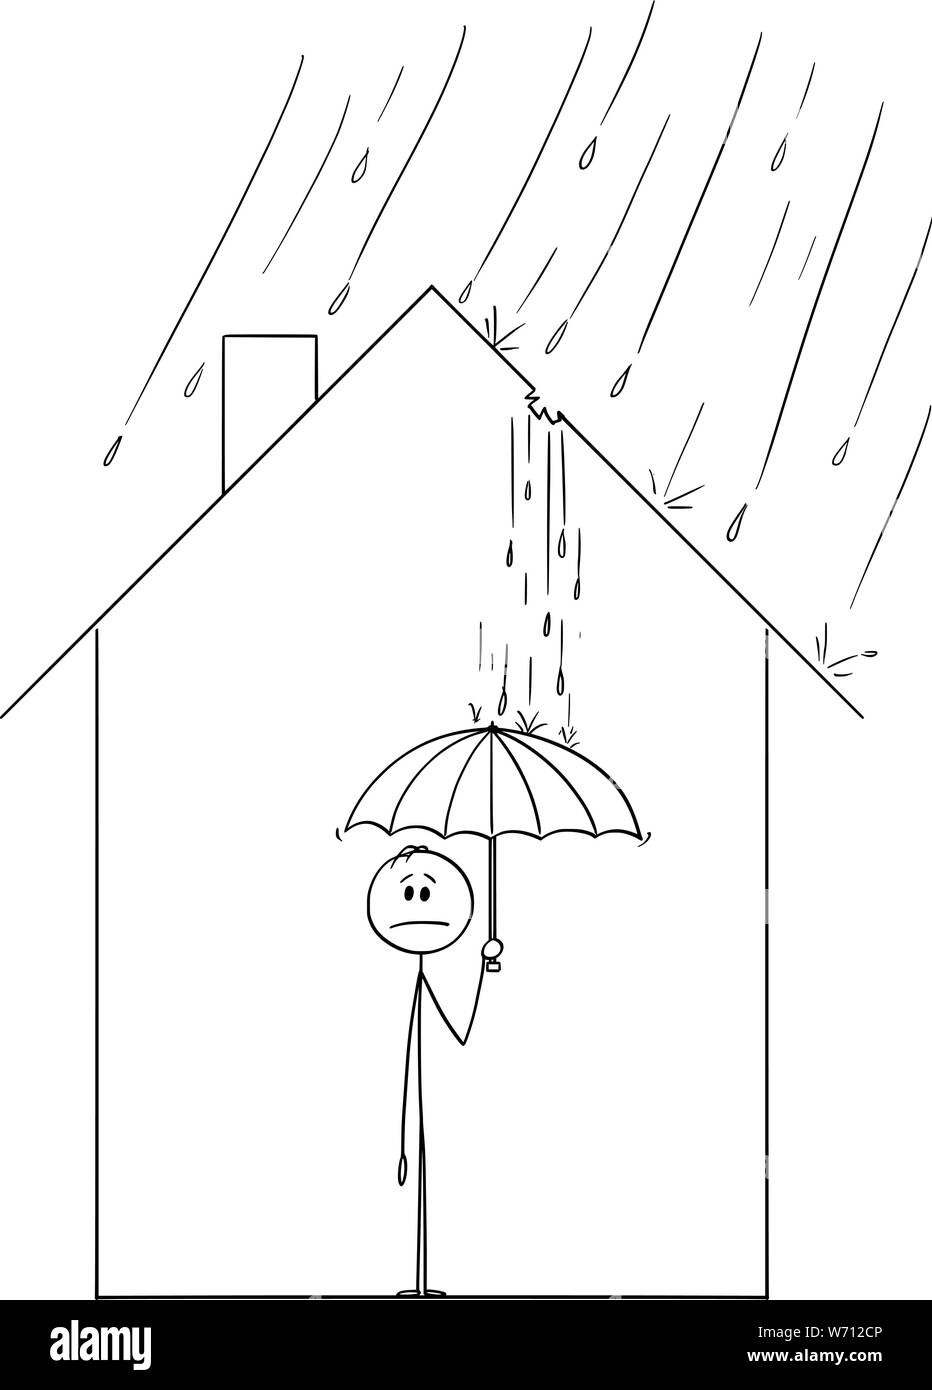 Vektor cartoon Strichmännchen Zeichnen konzeptionelle Darstellung der  frustrierten Mann mit Regenschirm innerhalb seiner Familie Haus, weil Regen  durch das Loch im Dach kommt Stock-Vektorgrafik - Alamy